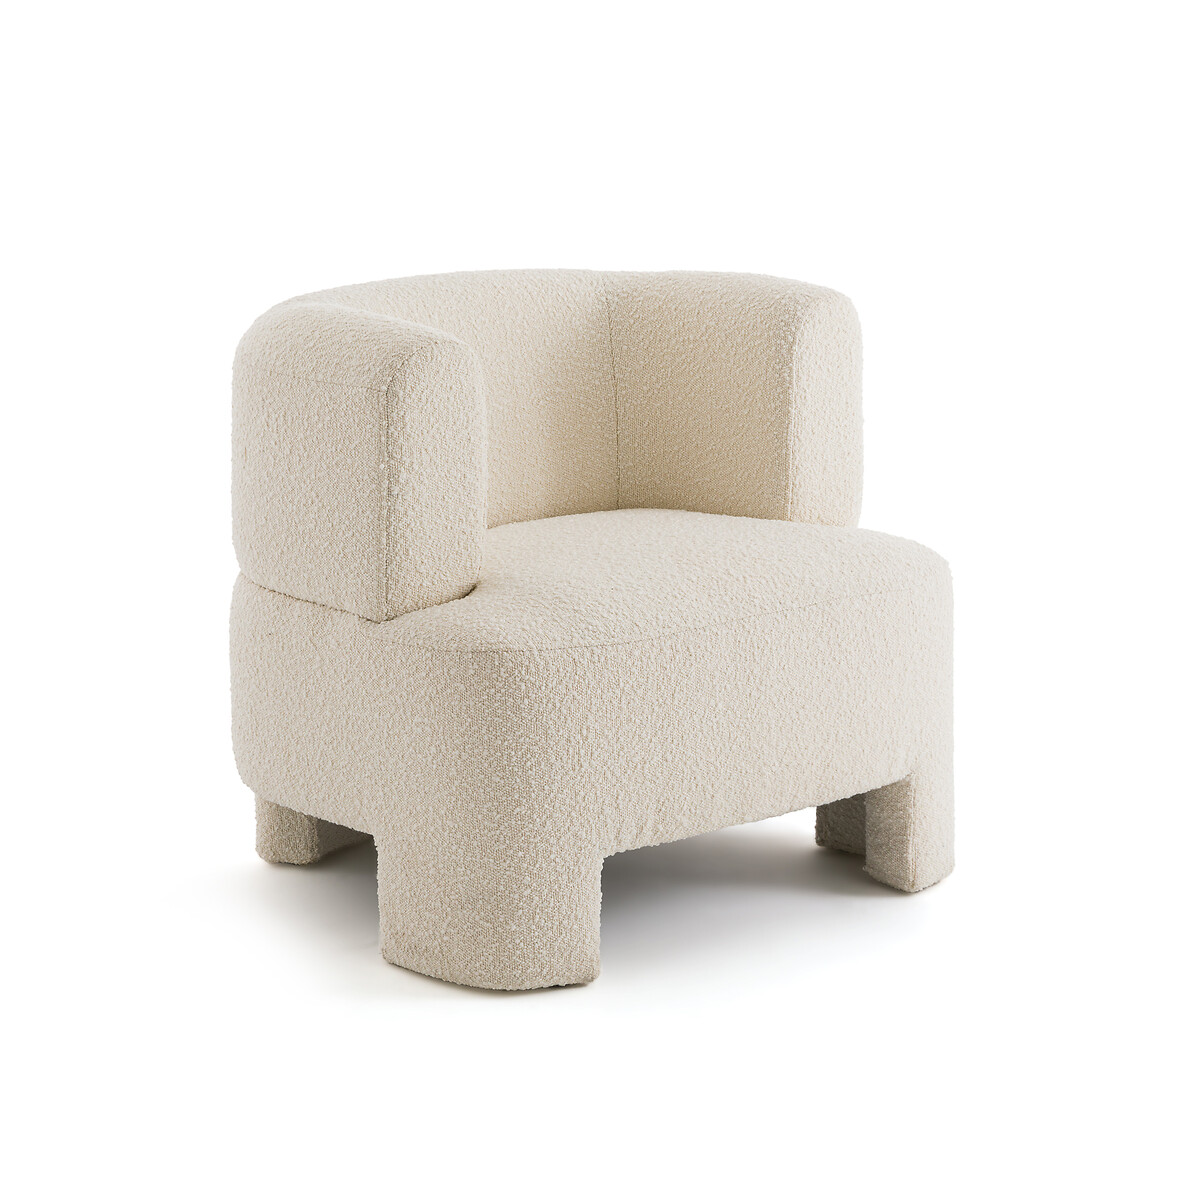 Кресло из ткани букле маленькая модель Darrel единый размер бежевый кресло шар из ткани букле jimi единый размер бежевый